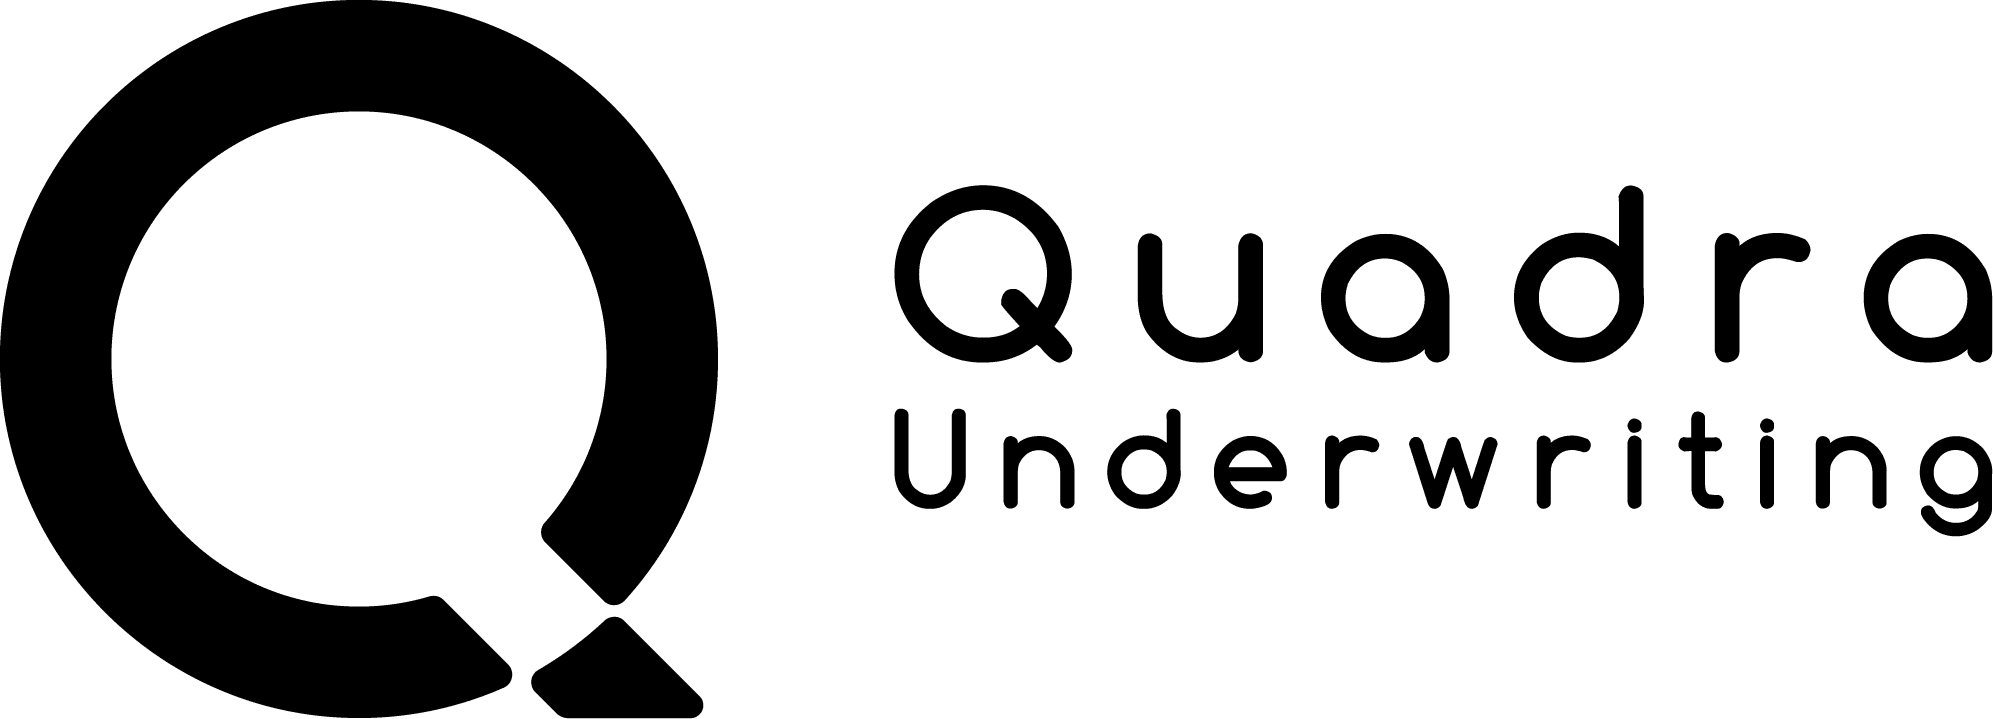 Produkty ubezpieczeniowe - Quadra Underwriting